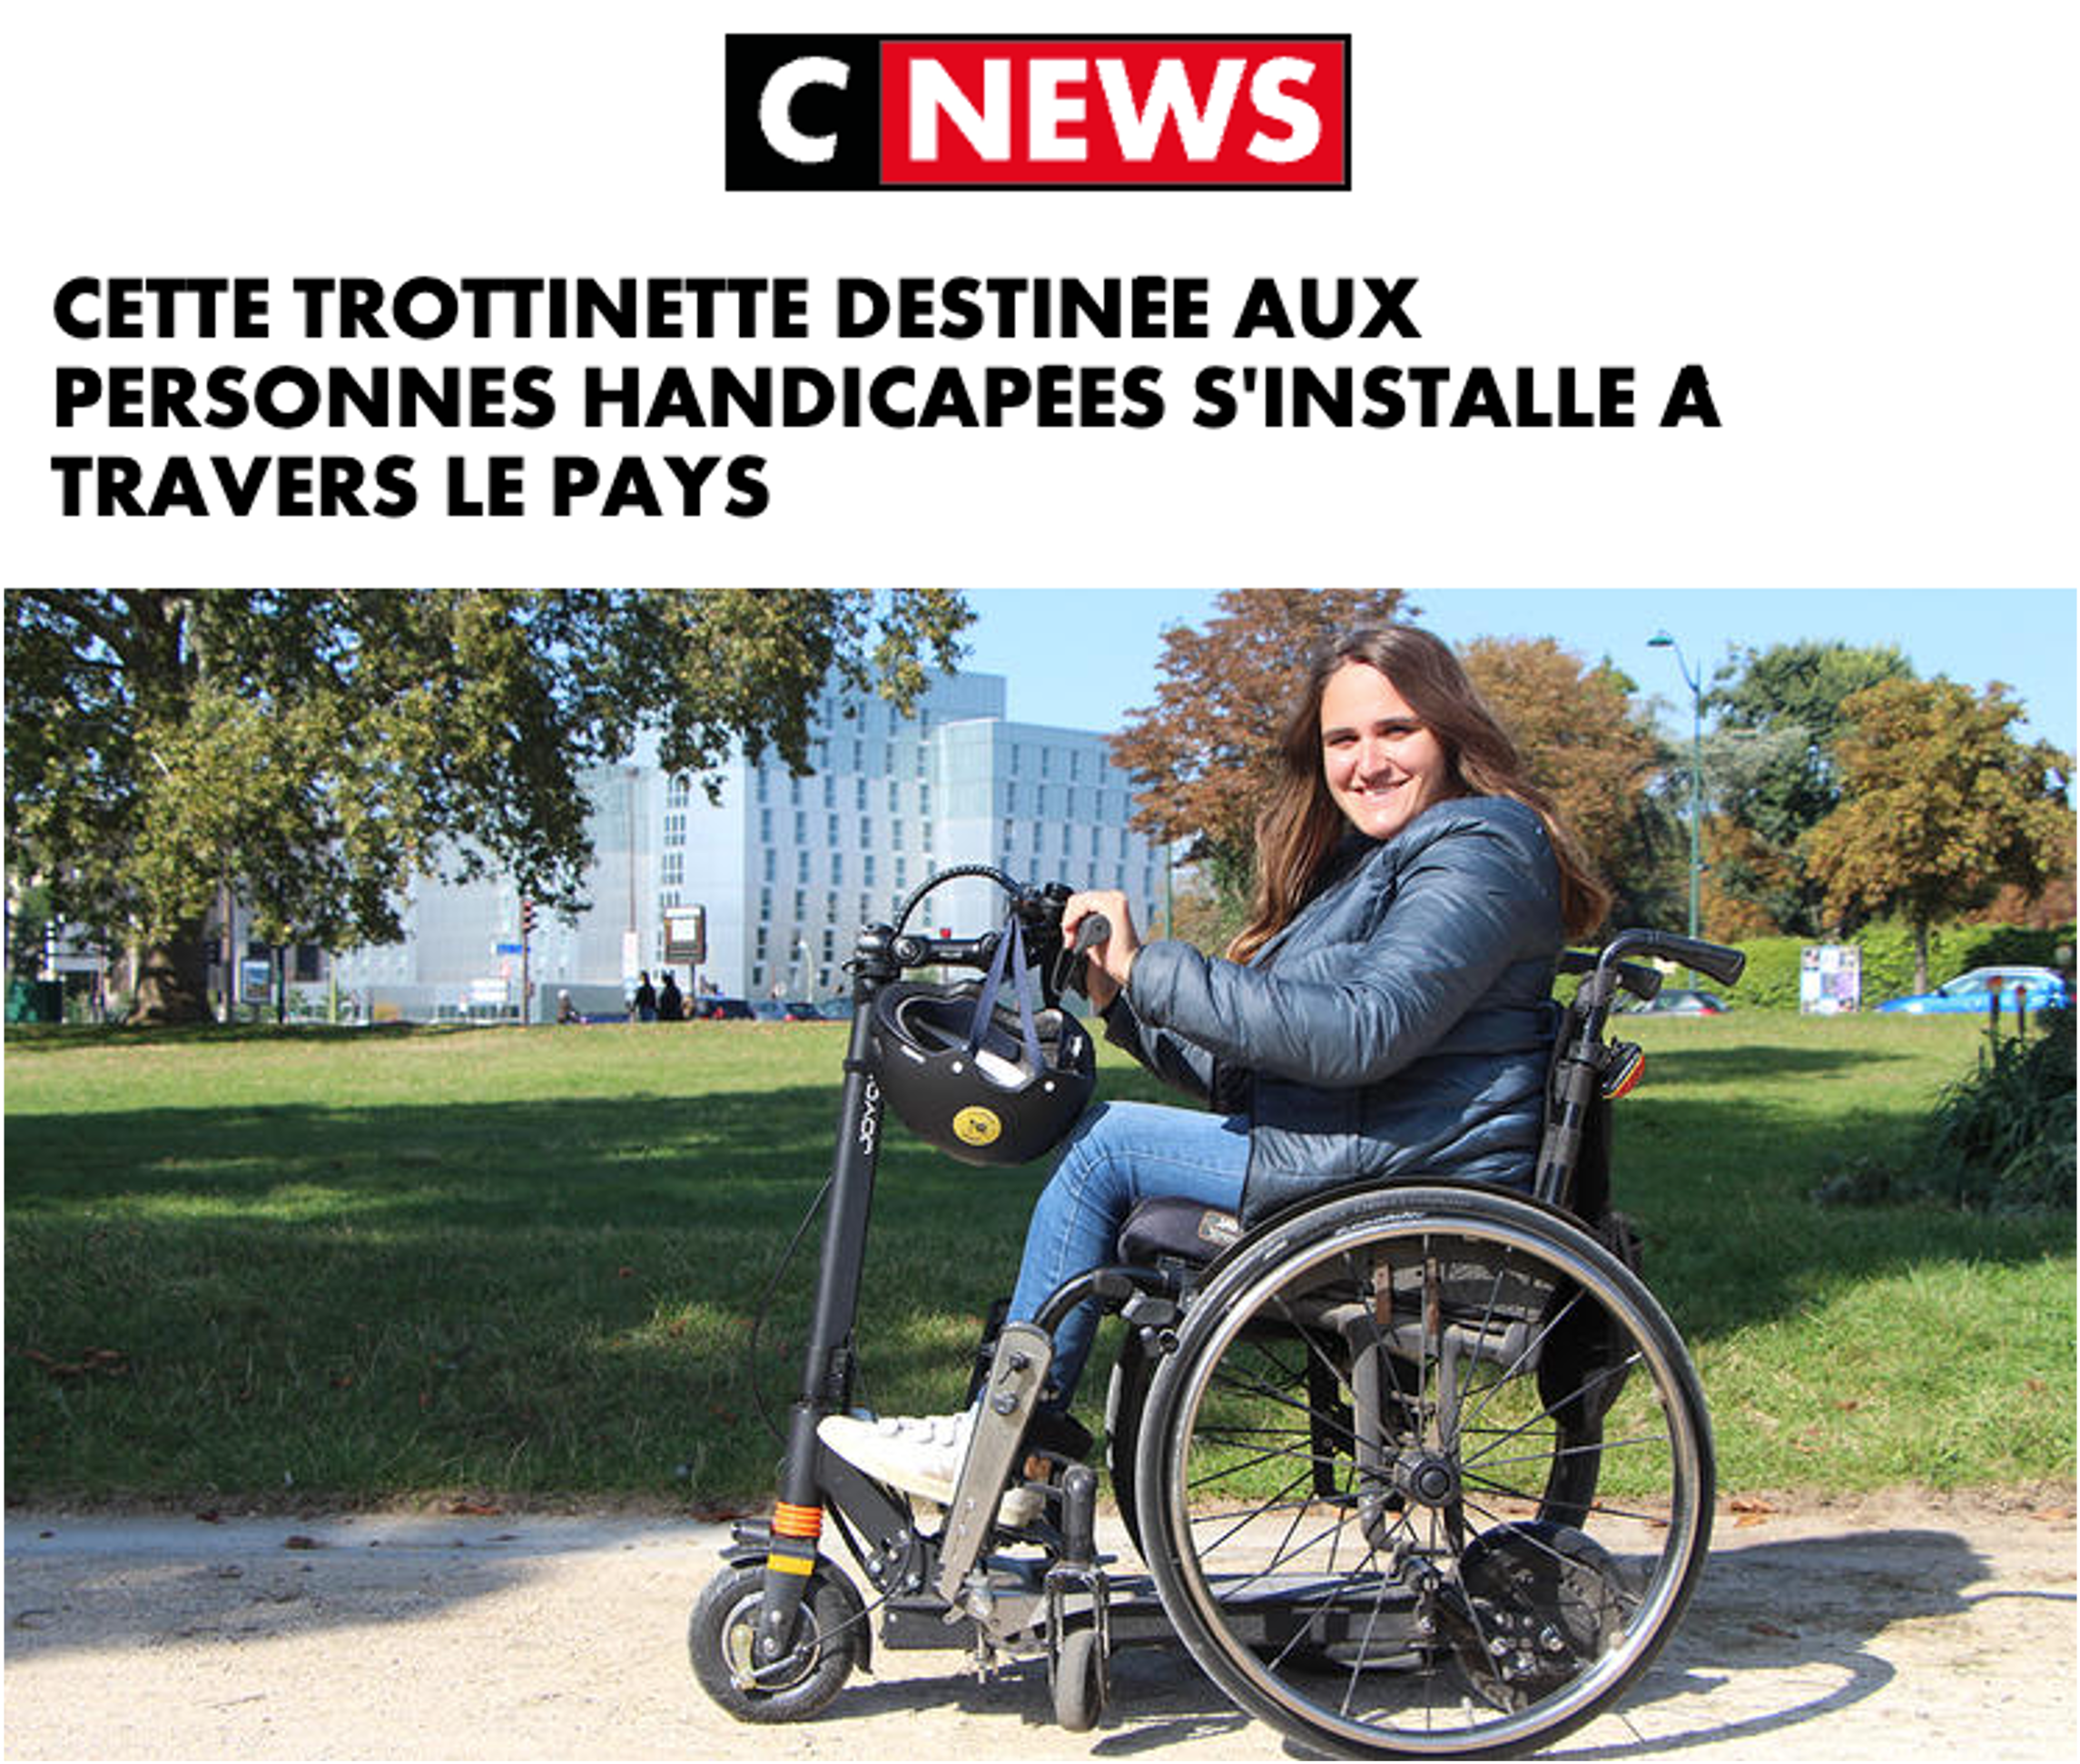 C News : Cette trottinette destinée aux personnes handicapées s'installe à travers le pays